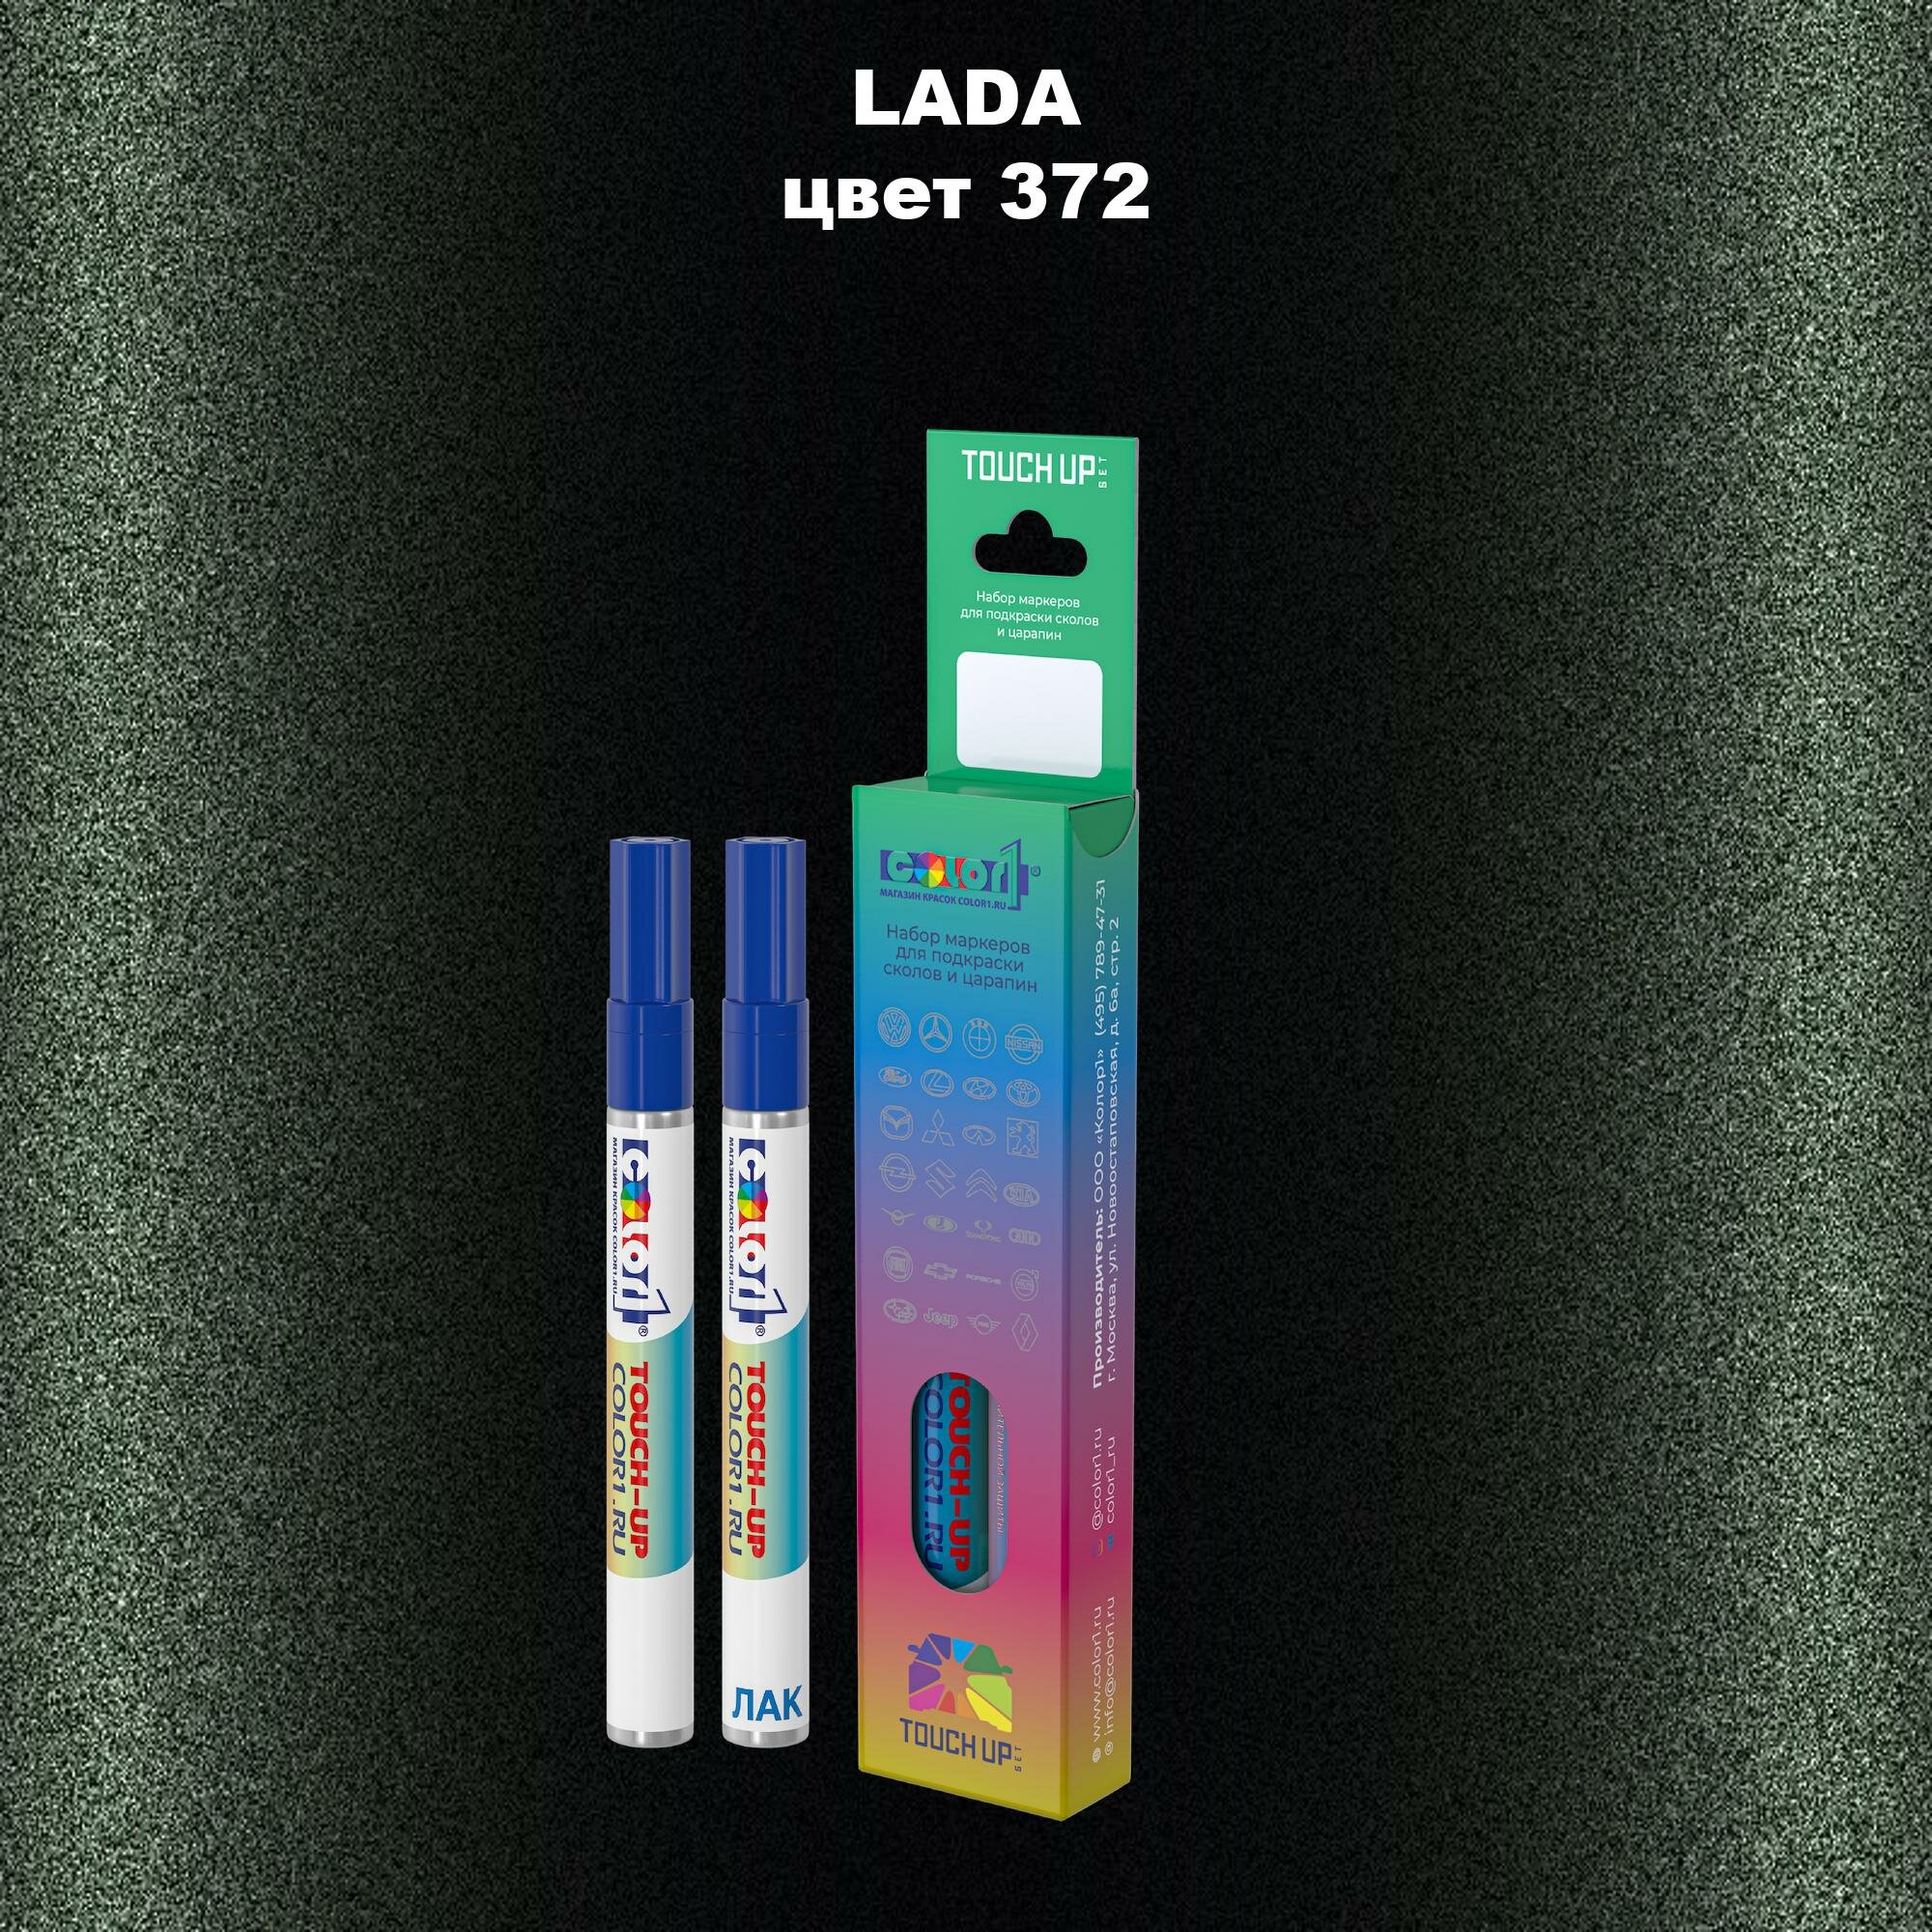 Набор маркеров (маркер с краской и маркер с лаком) для закраски сколов и царапин на автомобиле LADA, цвет 372 - криптон (KRIPTON)